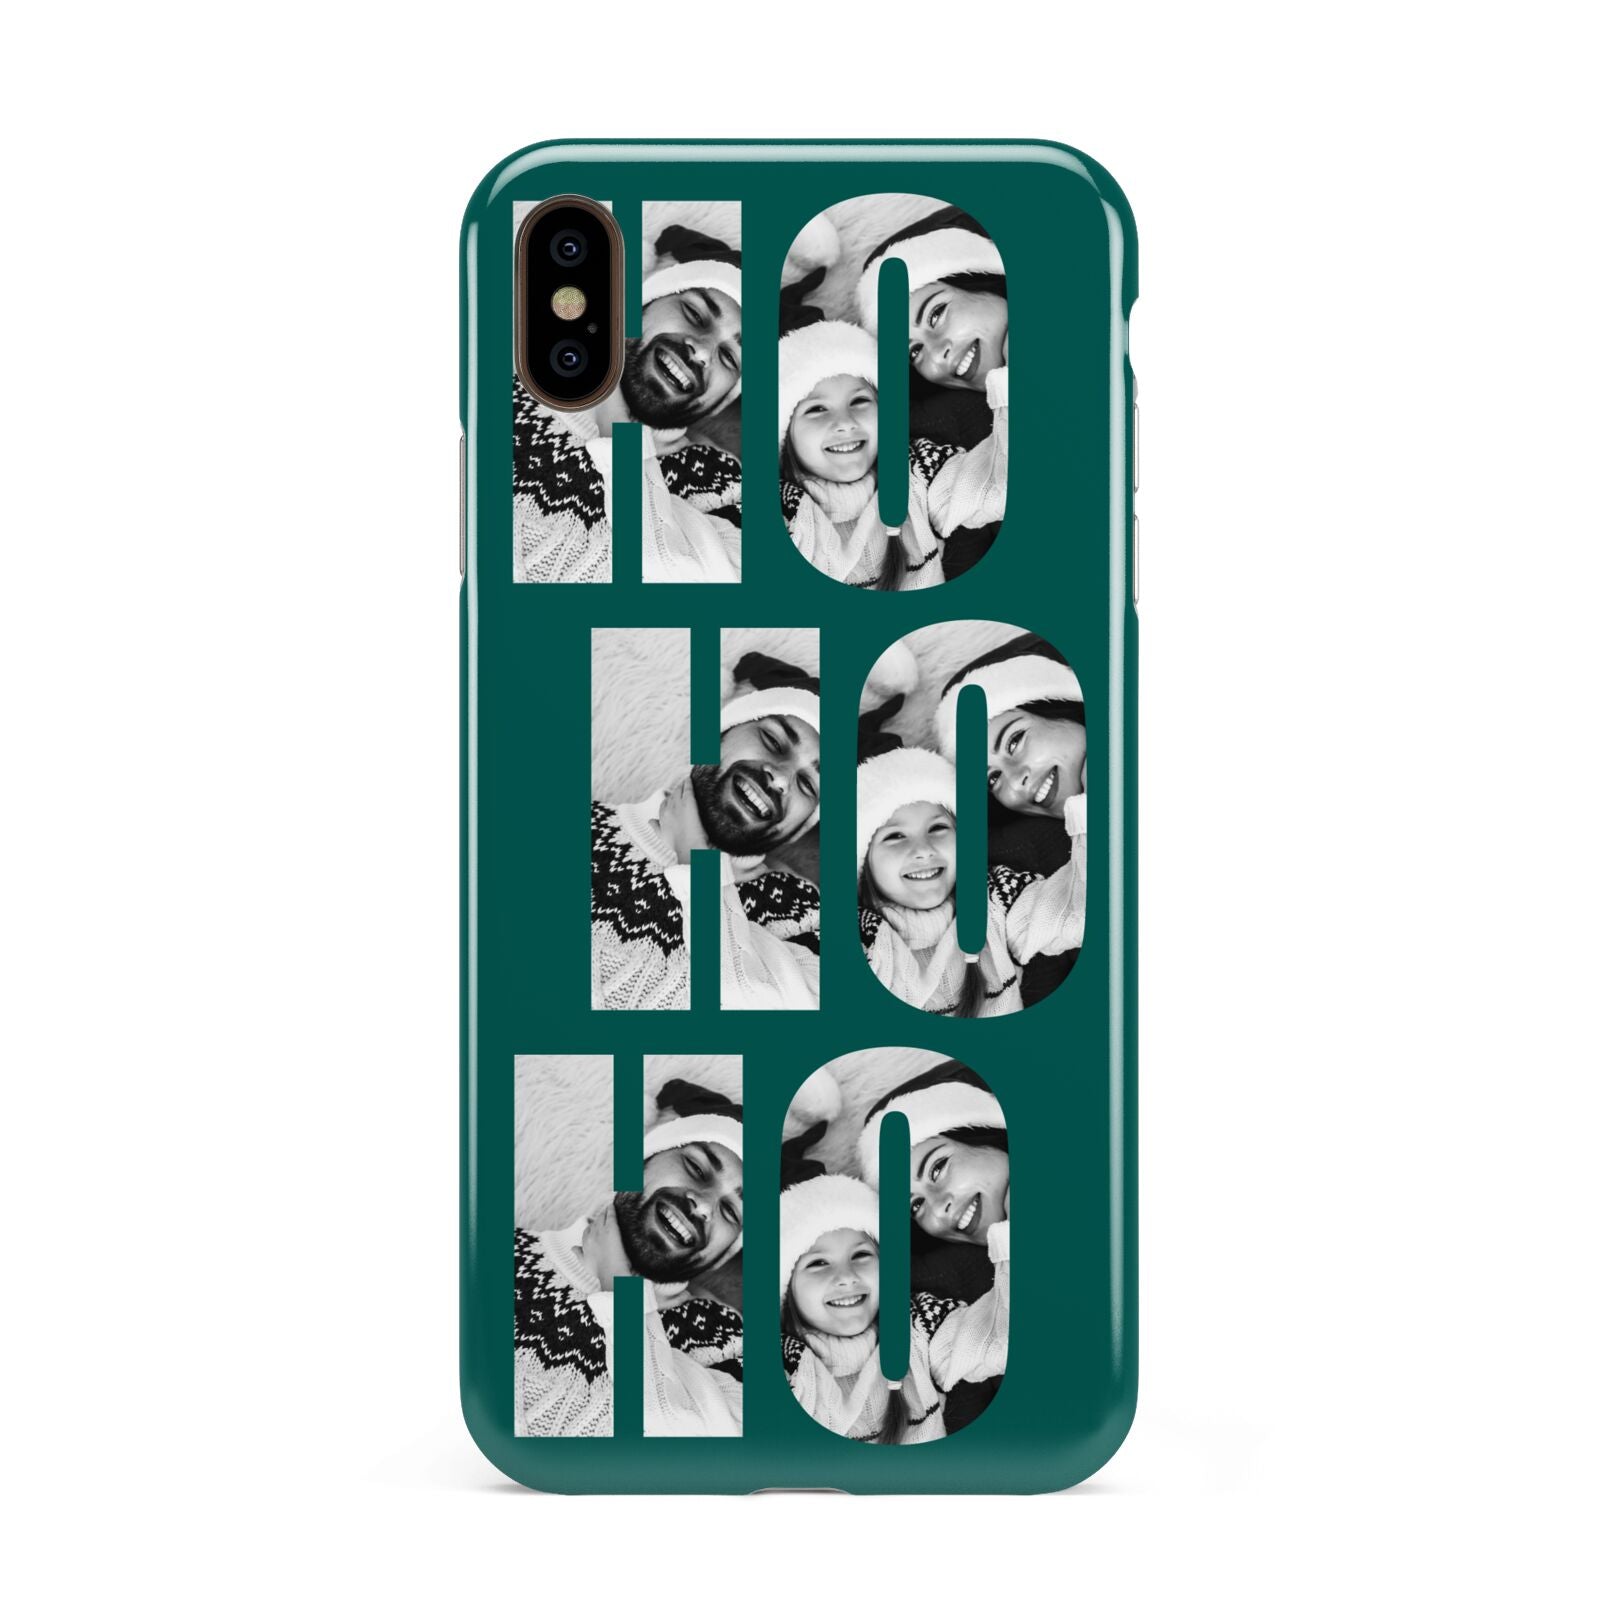 Green Ho Ho Ho Photo Upload Christmas Apple iPhone Xs Max 3D Tough Case